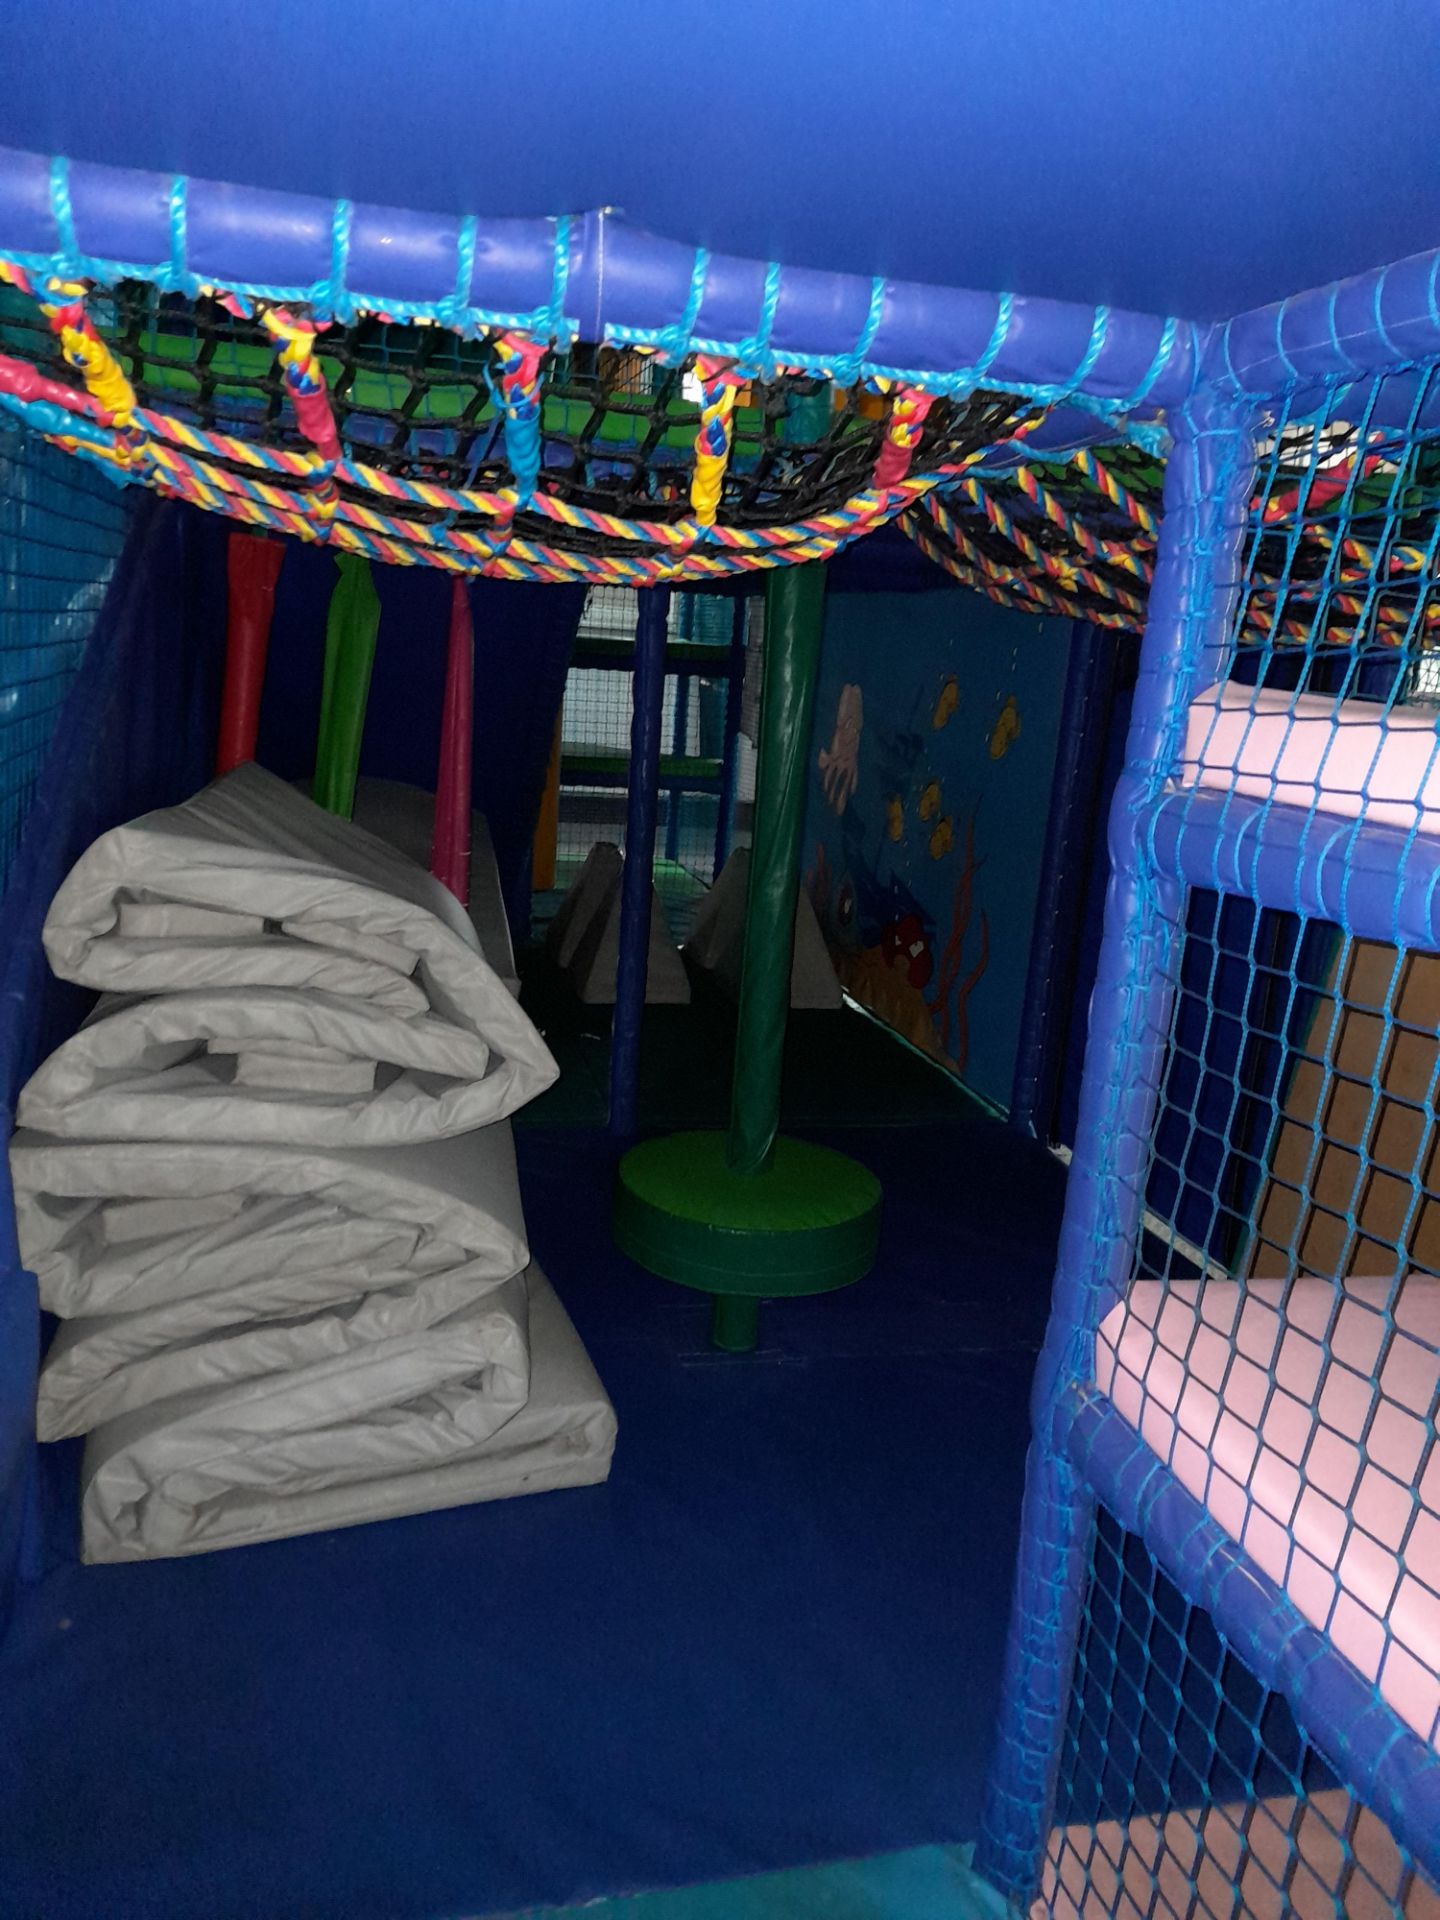 Bespoke 4-Tier Children’s Soft Play Structure, including 2 lane wave slide, spiral slide, deck - Image 5 of 6